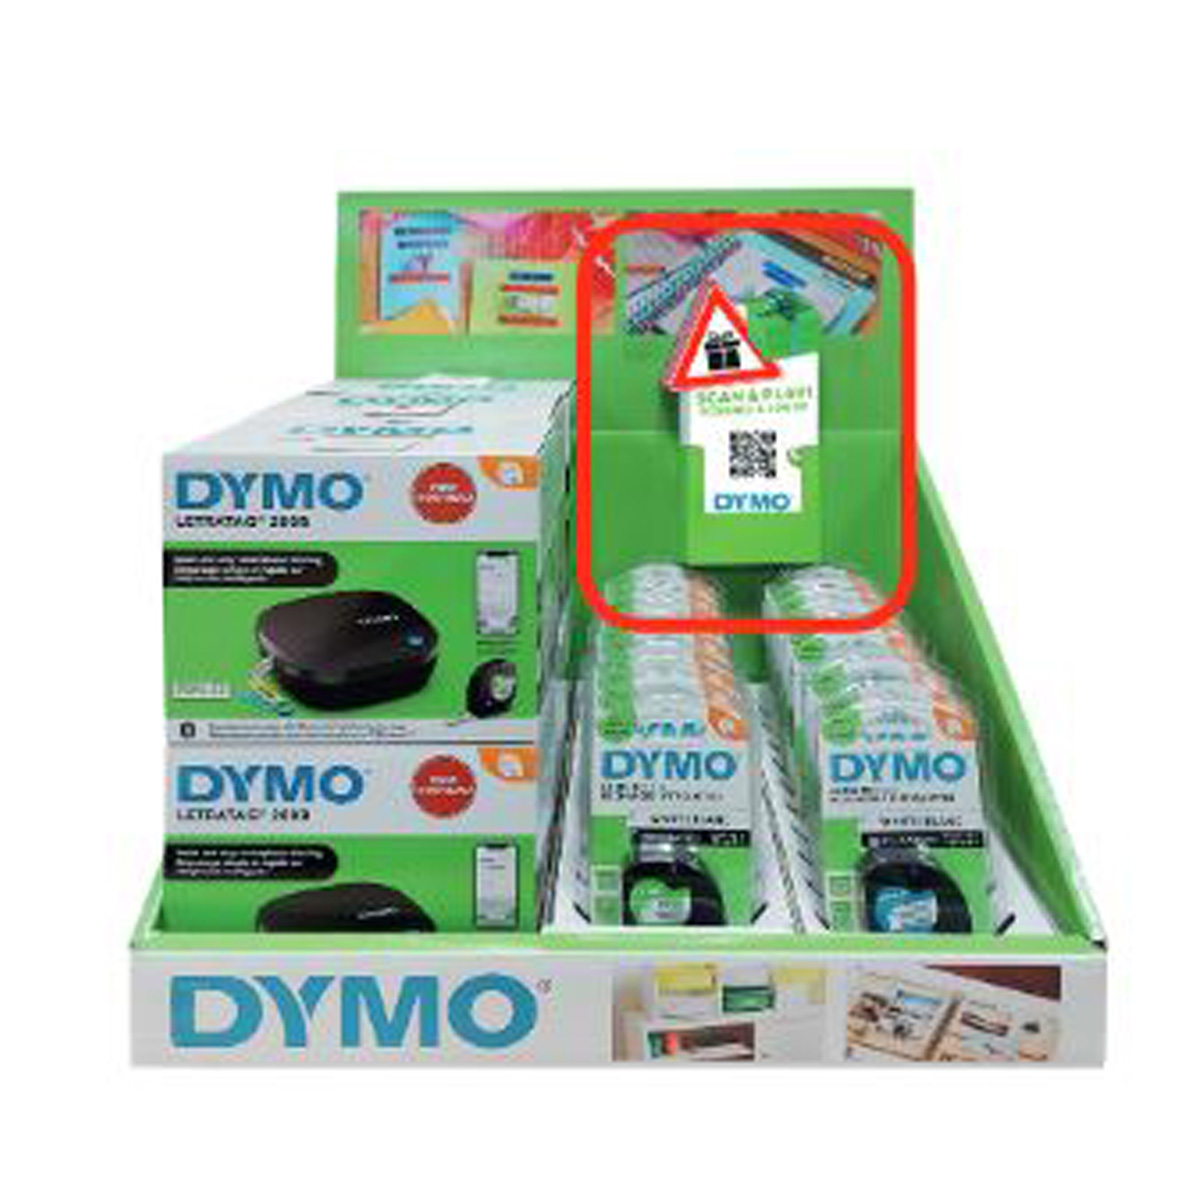 Dymo 2188202, Etikettendrucker, DYMO LT-200B kleines mit 2188202 (BILD1)